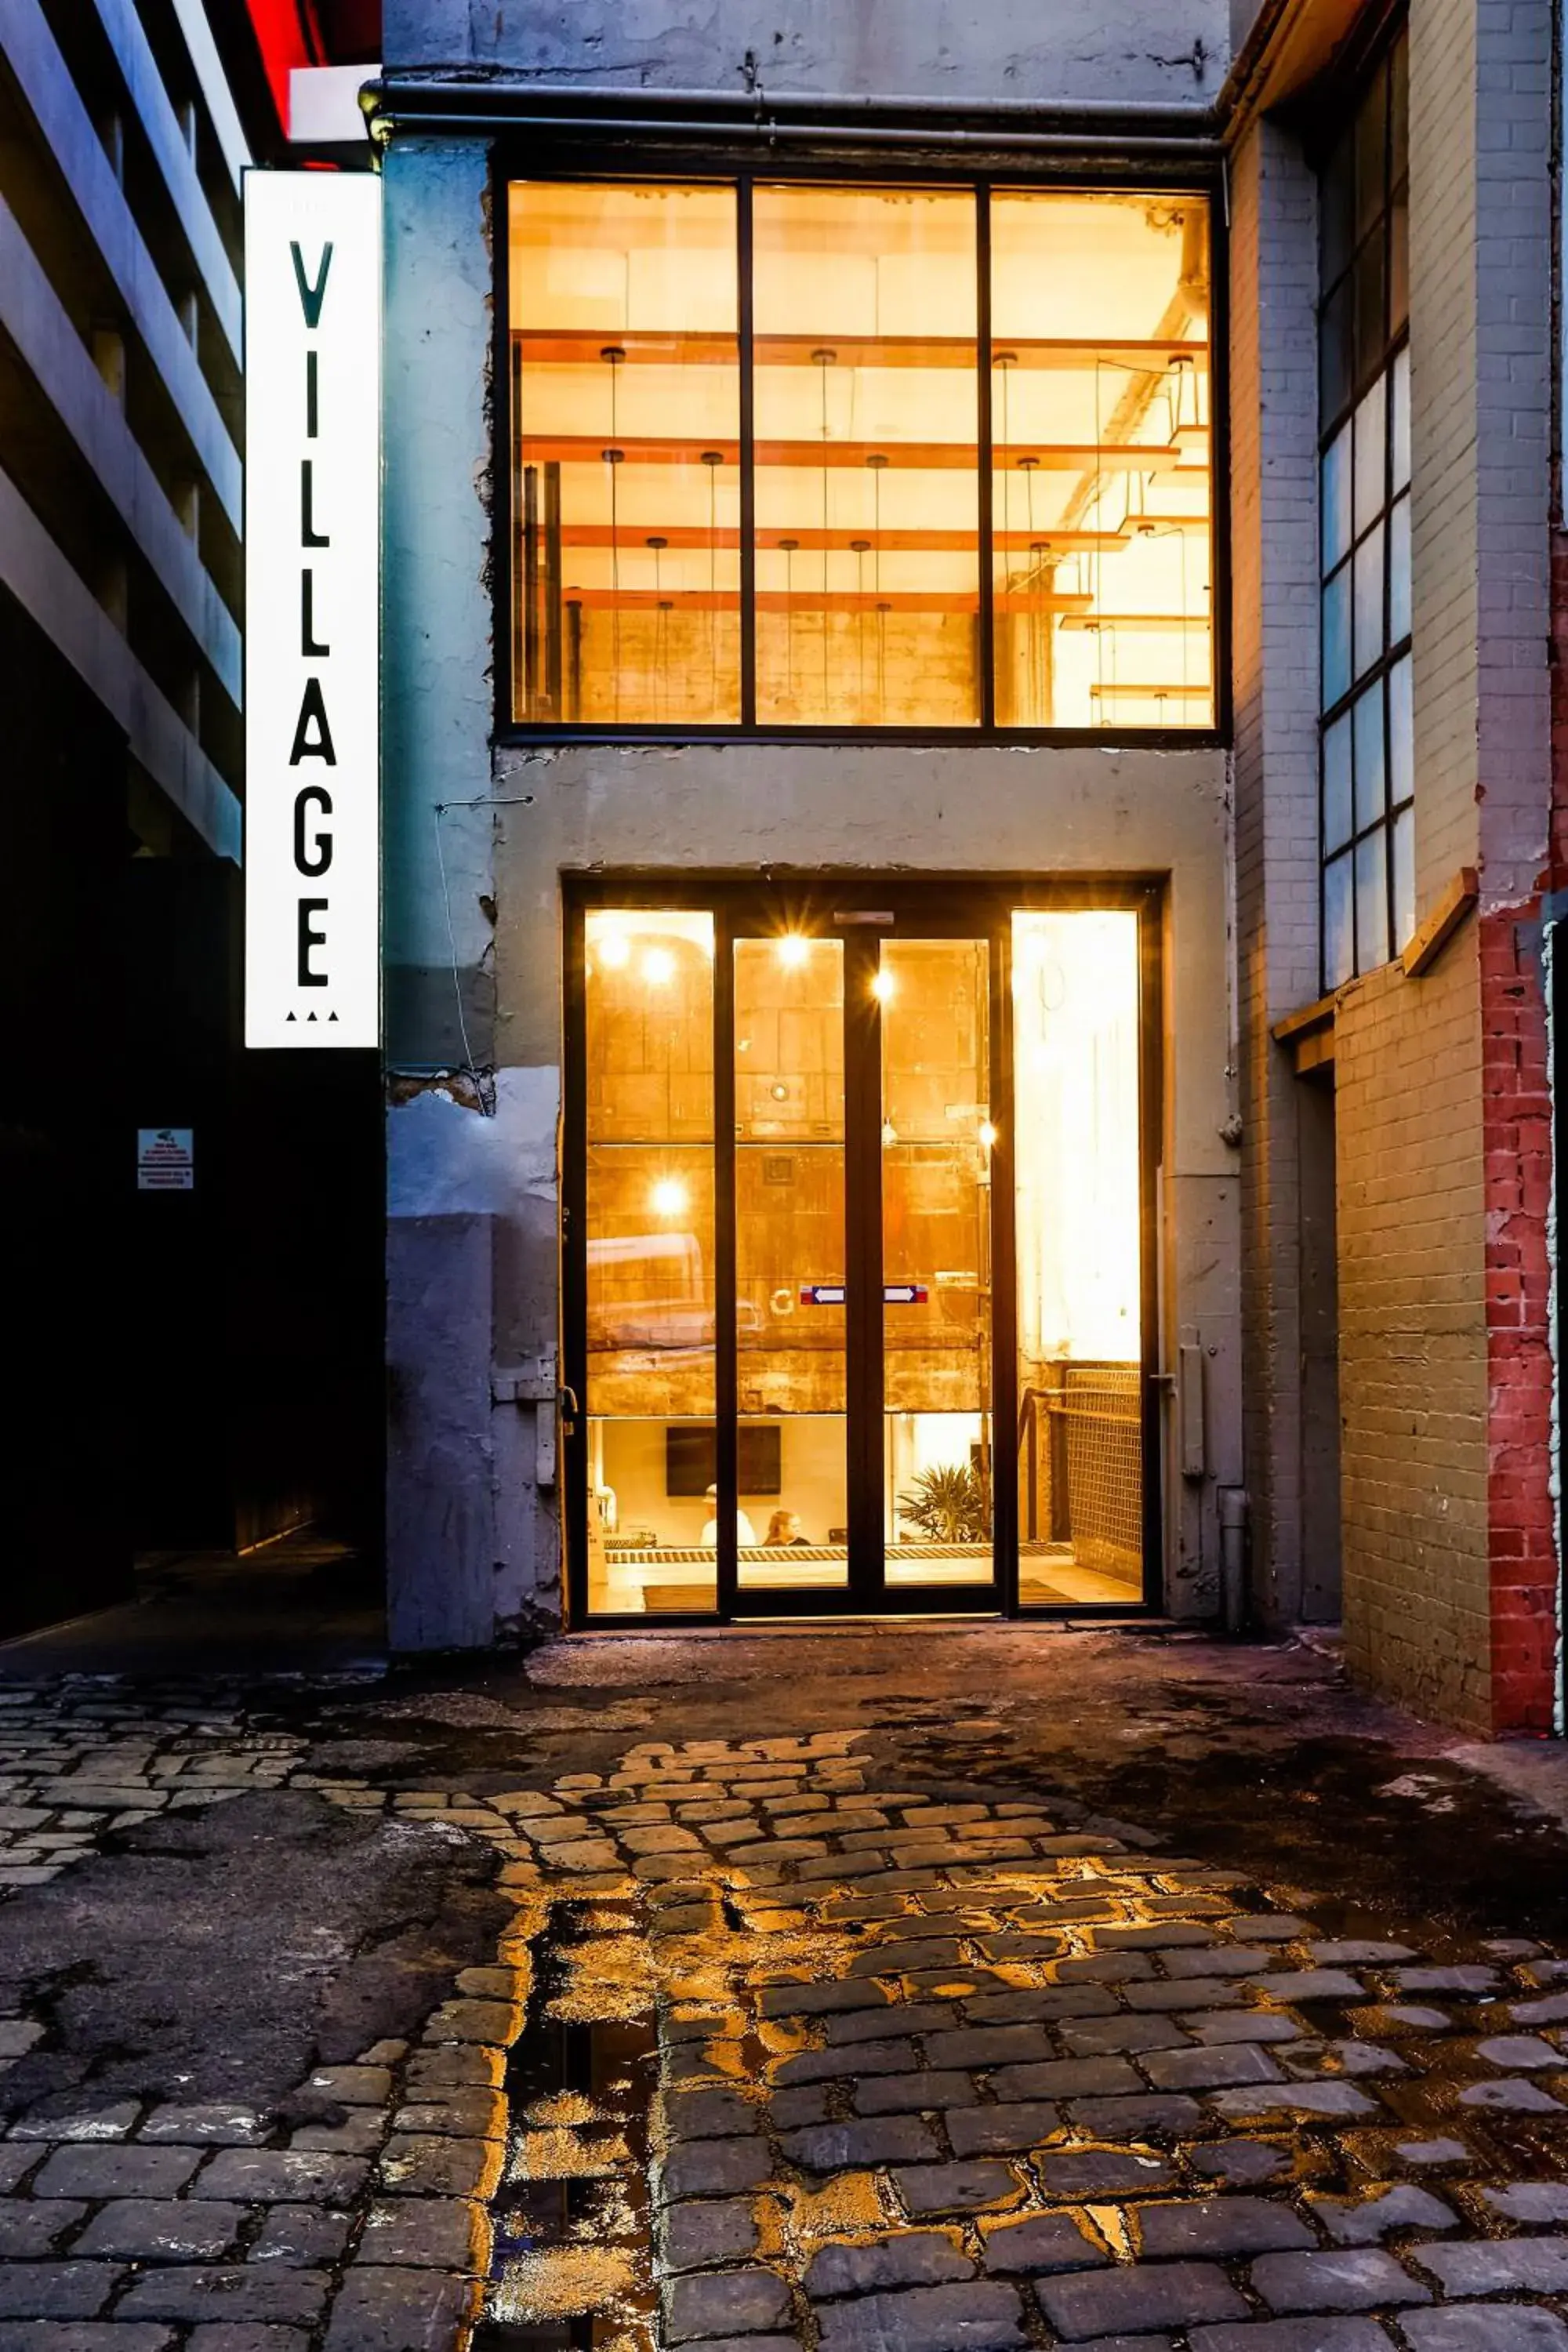 Facade/entrance in The Village Melbourne